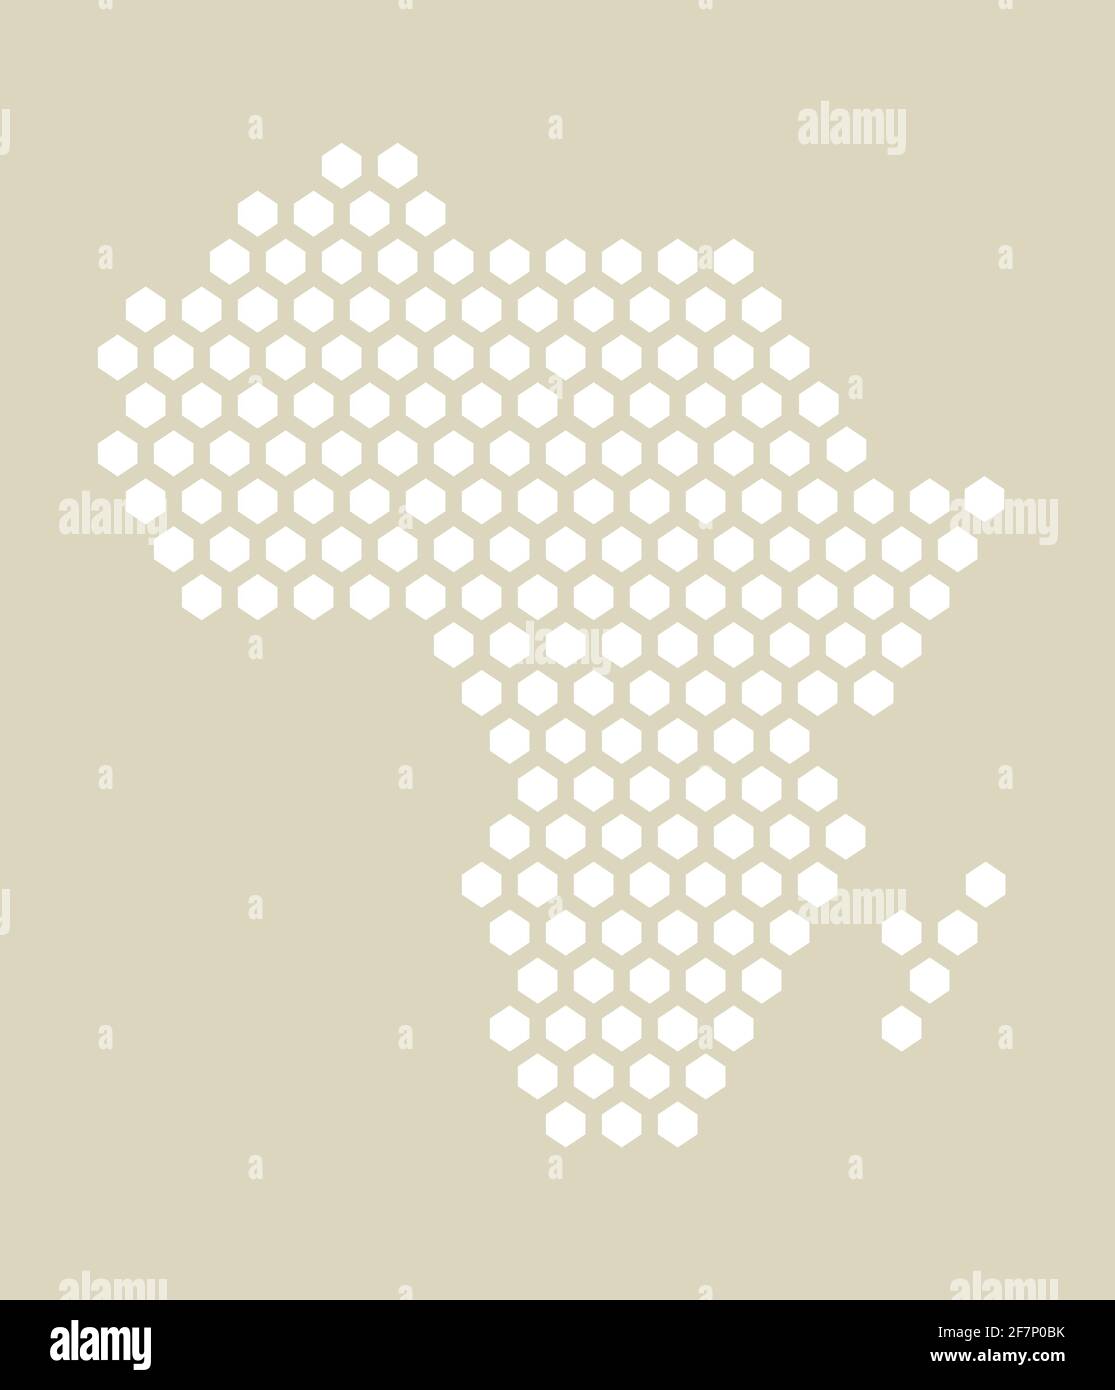 Weiße und gelbe sechseckige Pixelkarte von Afrika. Vektor-Illustration Afrikanischer Kontinent Sechskantkarte gepunktetes Mosaik. Administrative Grenze, Land compositi Stock Vektor